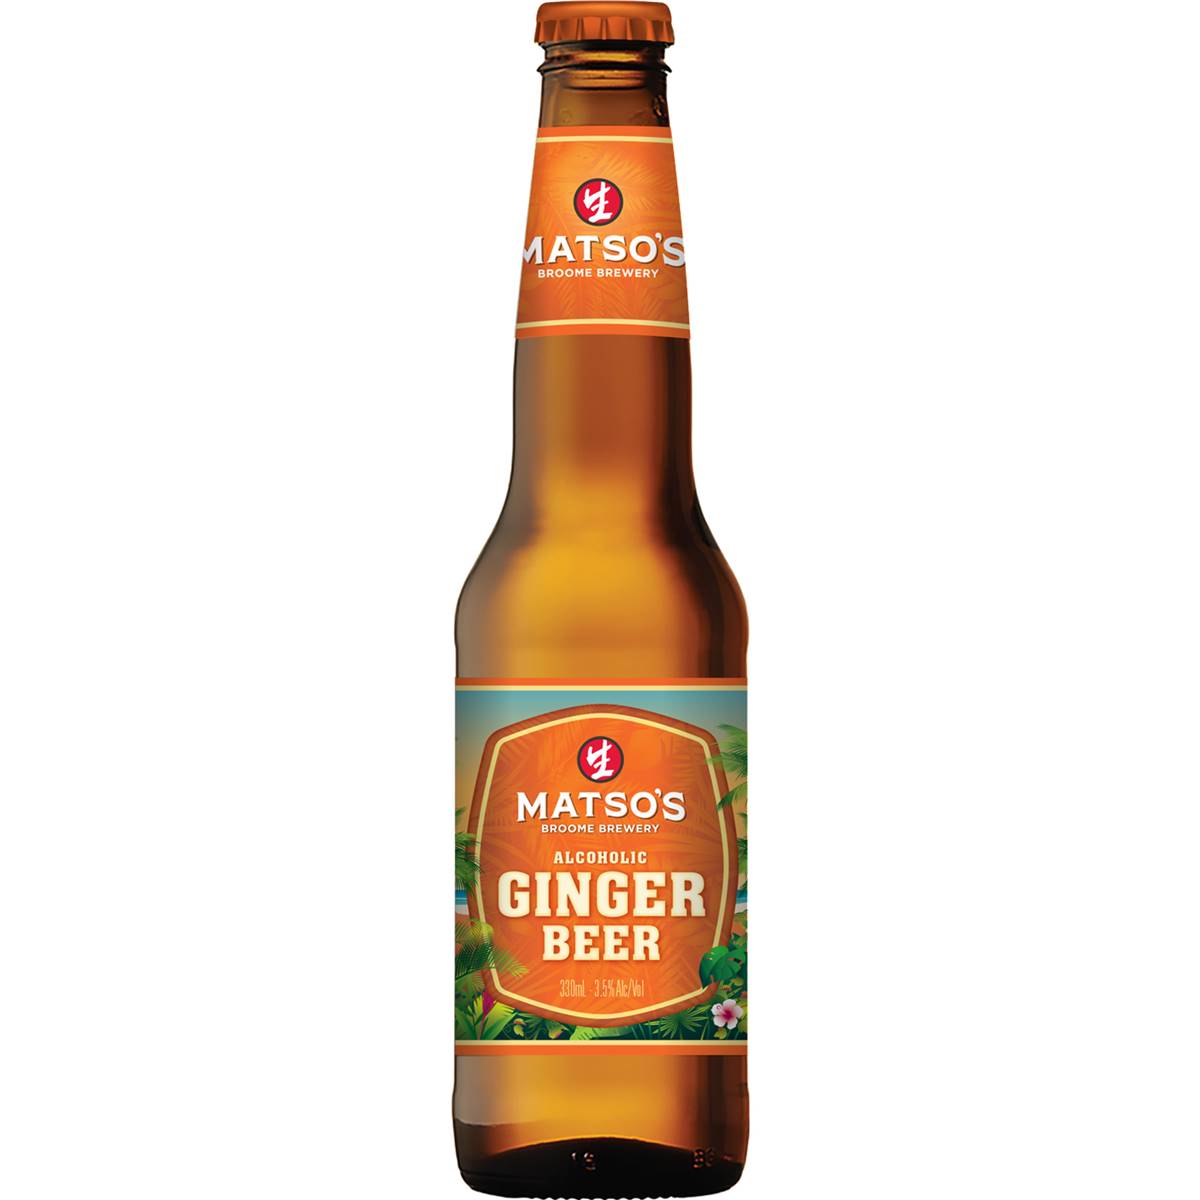 Matso's Ginger Beer Bottle